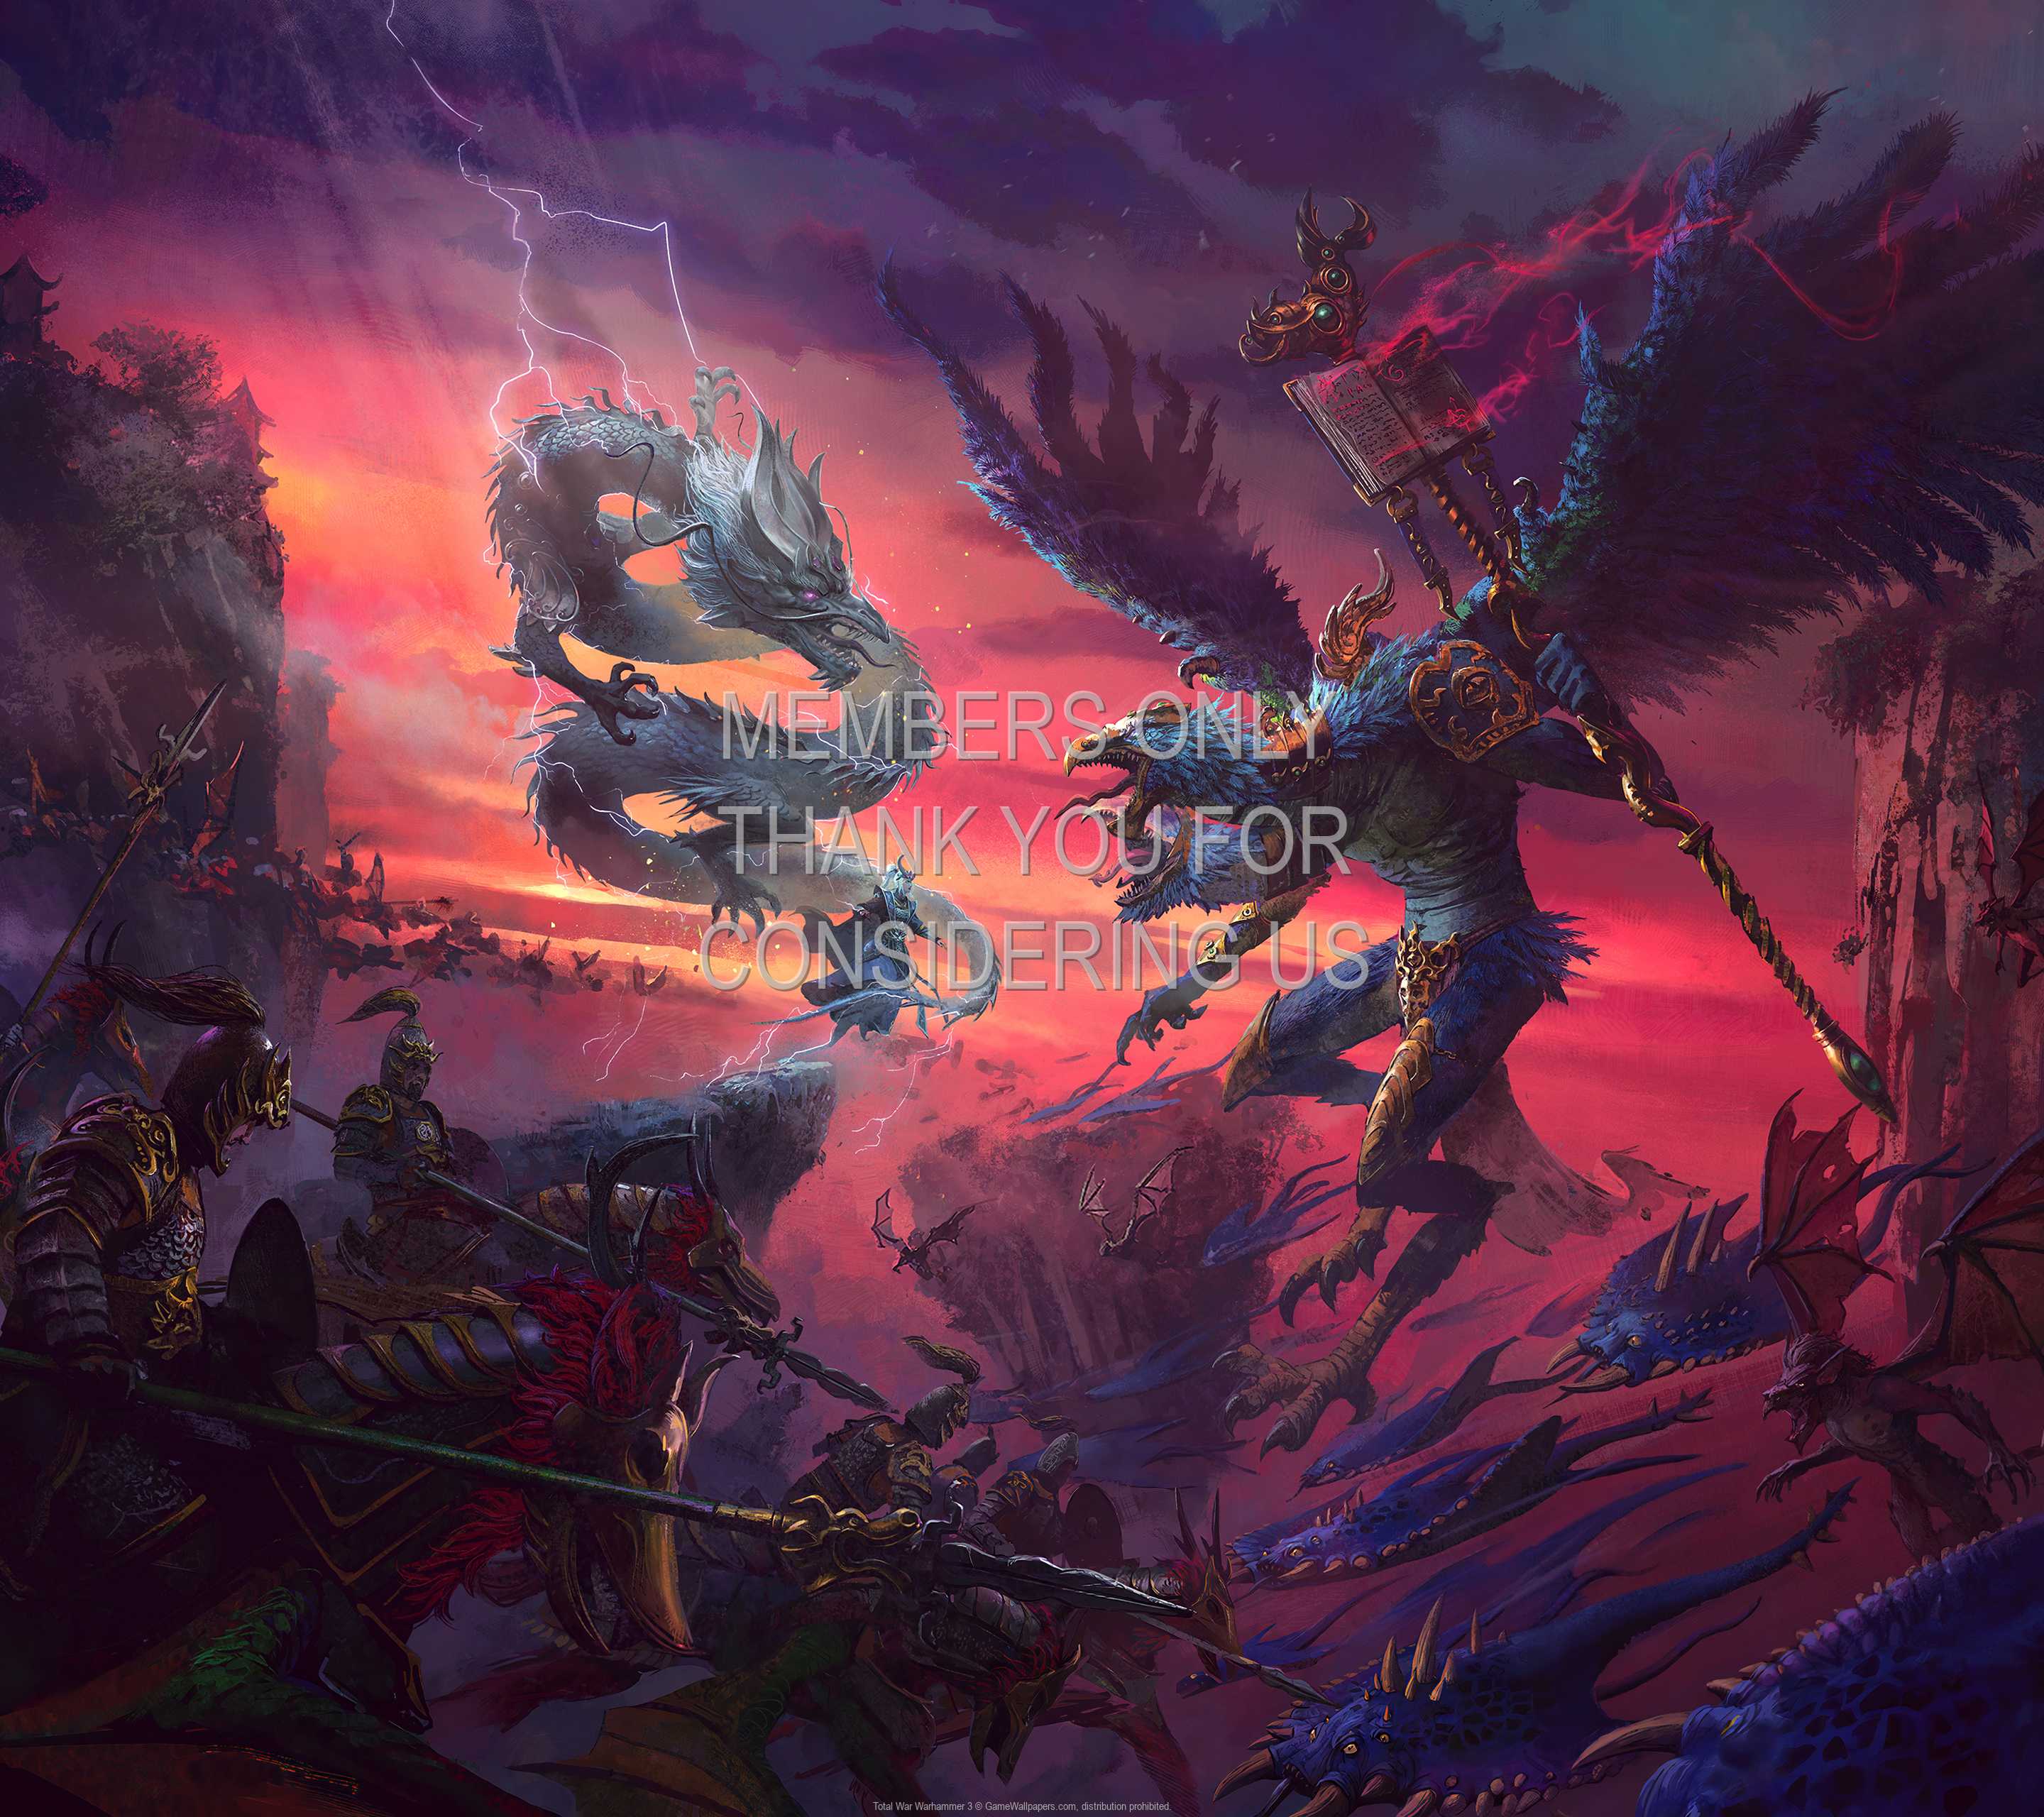 Total War: Warhammer 3 1440p Horizontal Mobile wallpaper or background 02